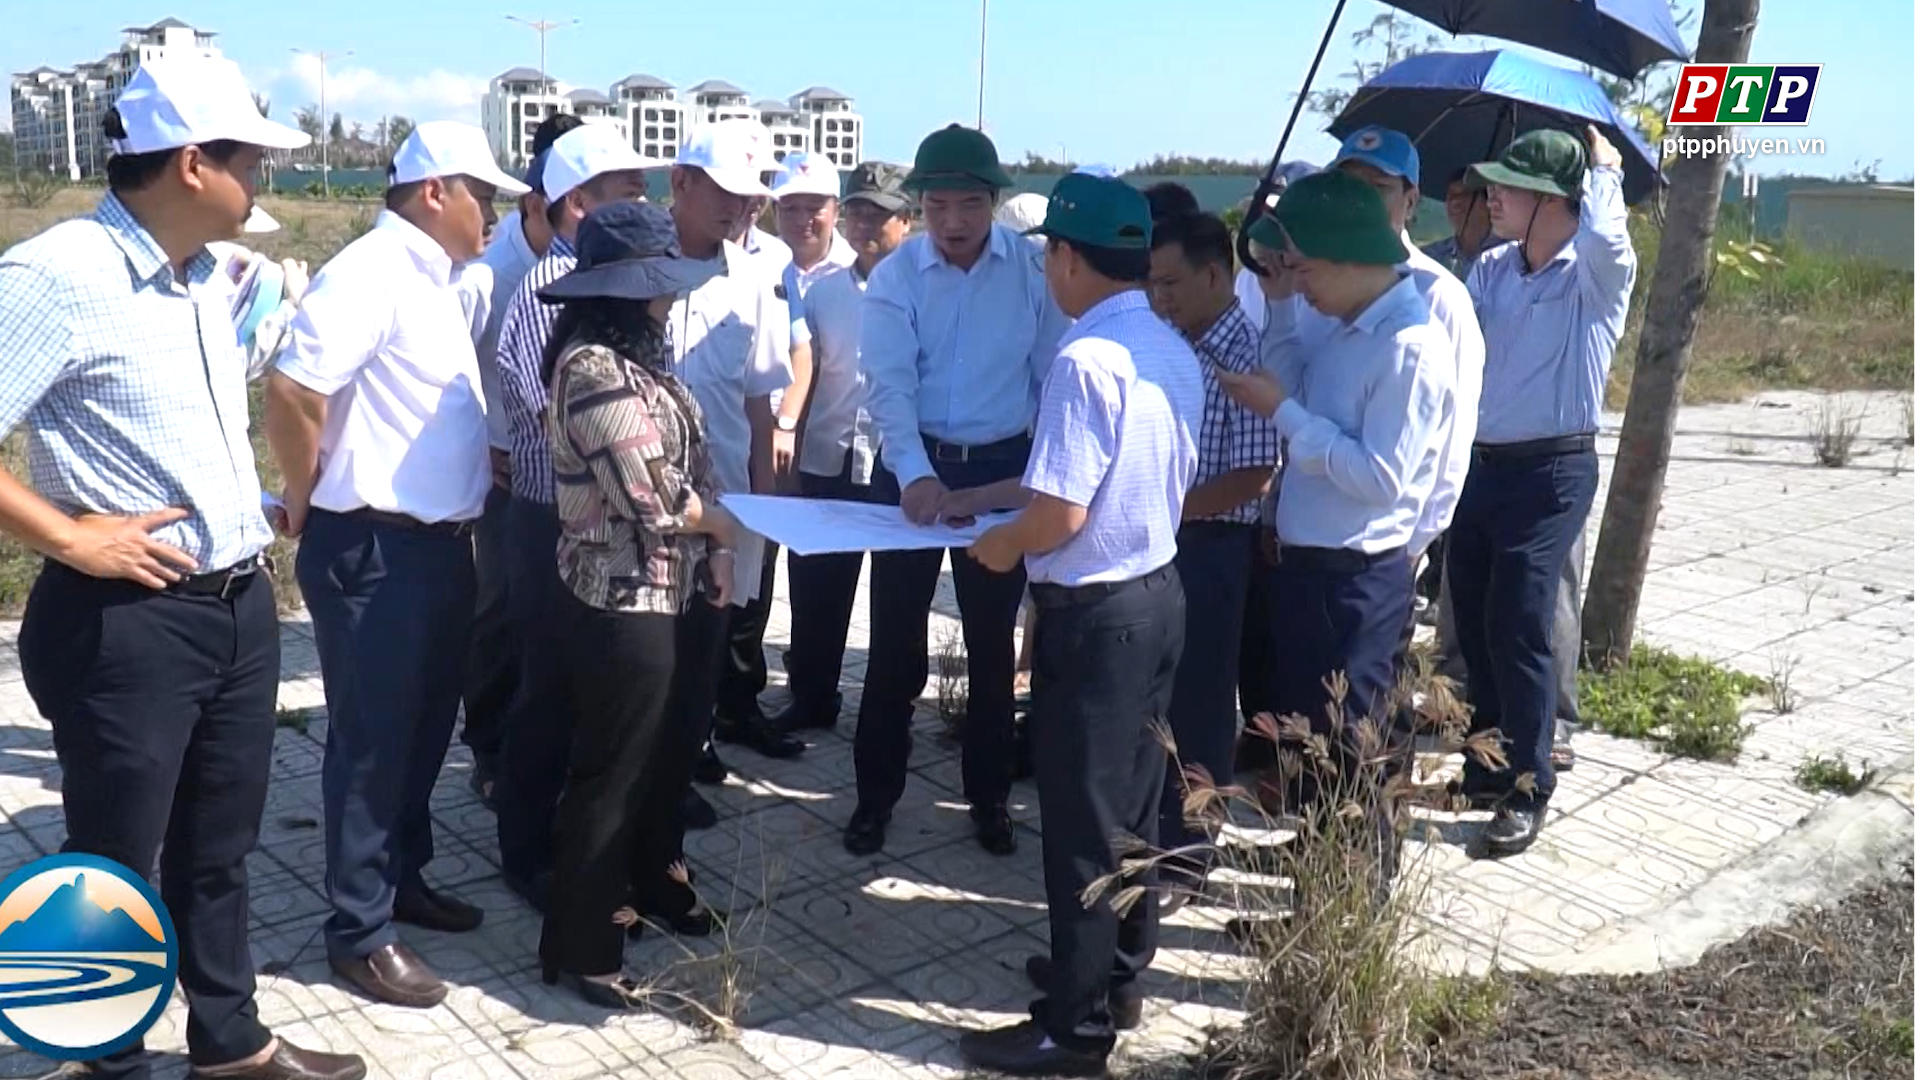 Chủ tịch UBND tỉnh Tạ Anh Tuấn kiểm tra một số dự án trên địa bàn thành phố Tuy Hòa